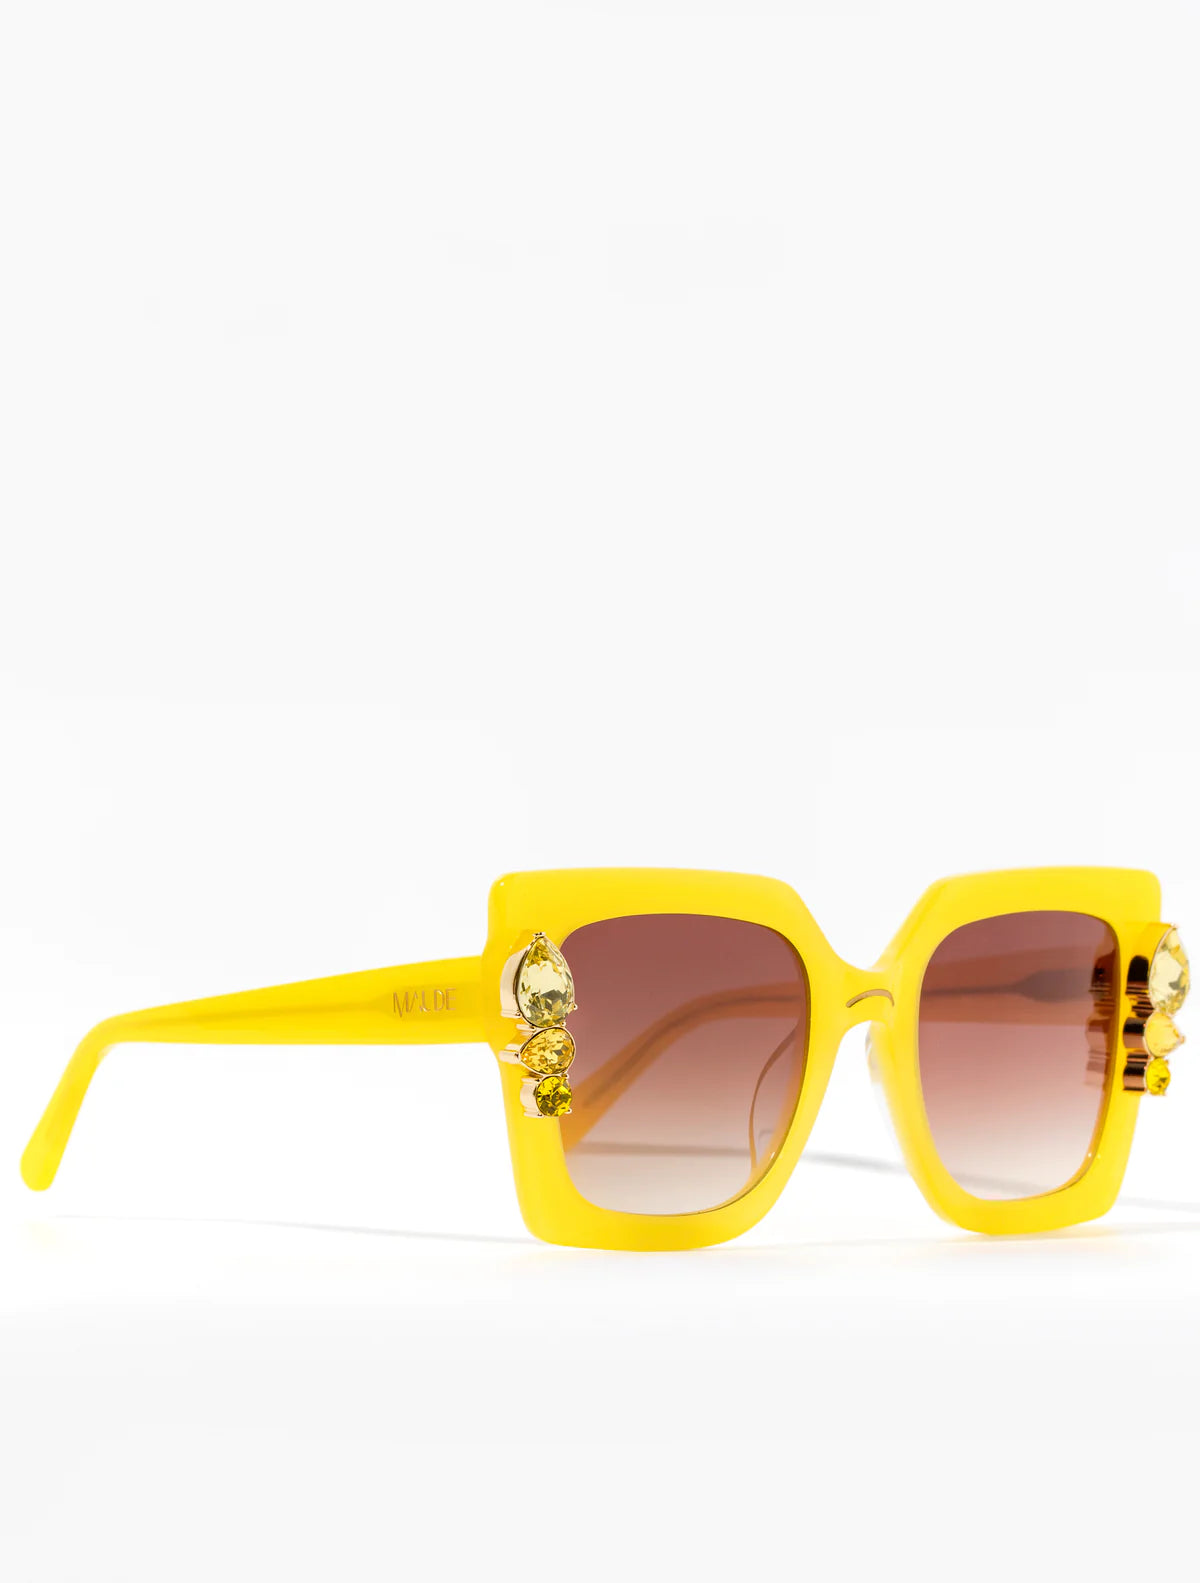 Limoncello Sunglasses